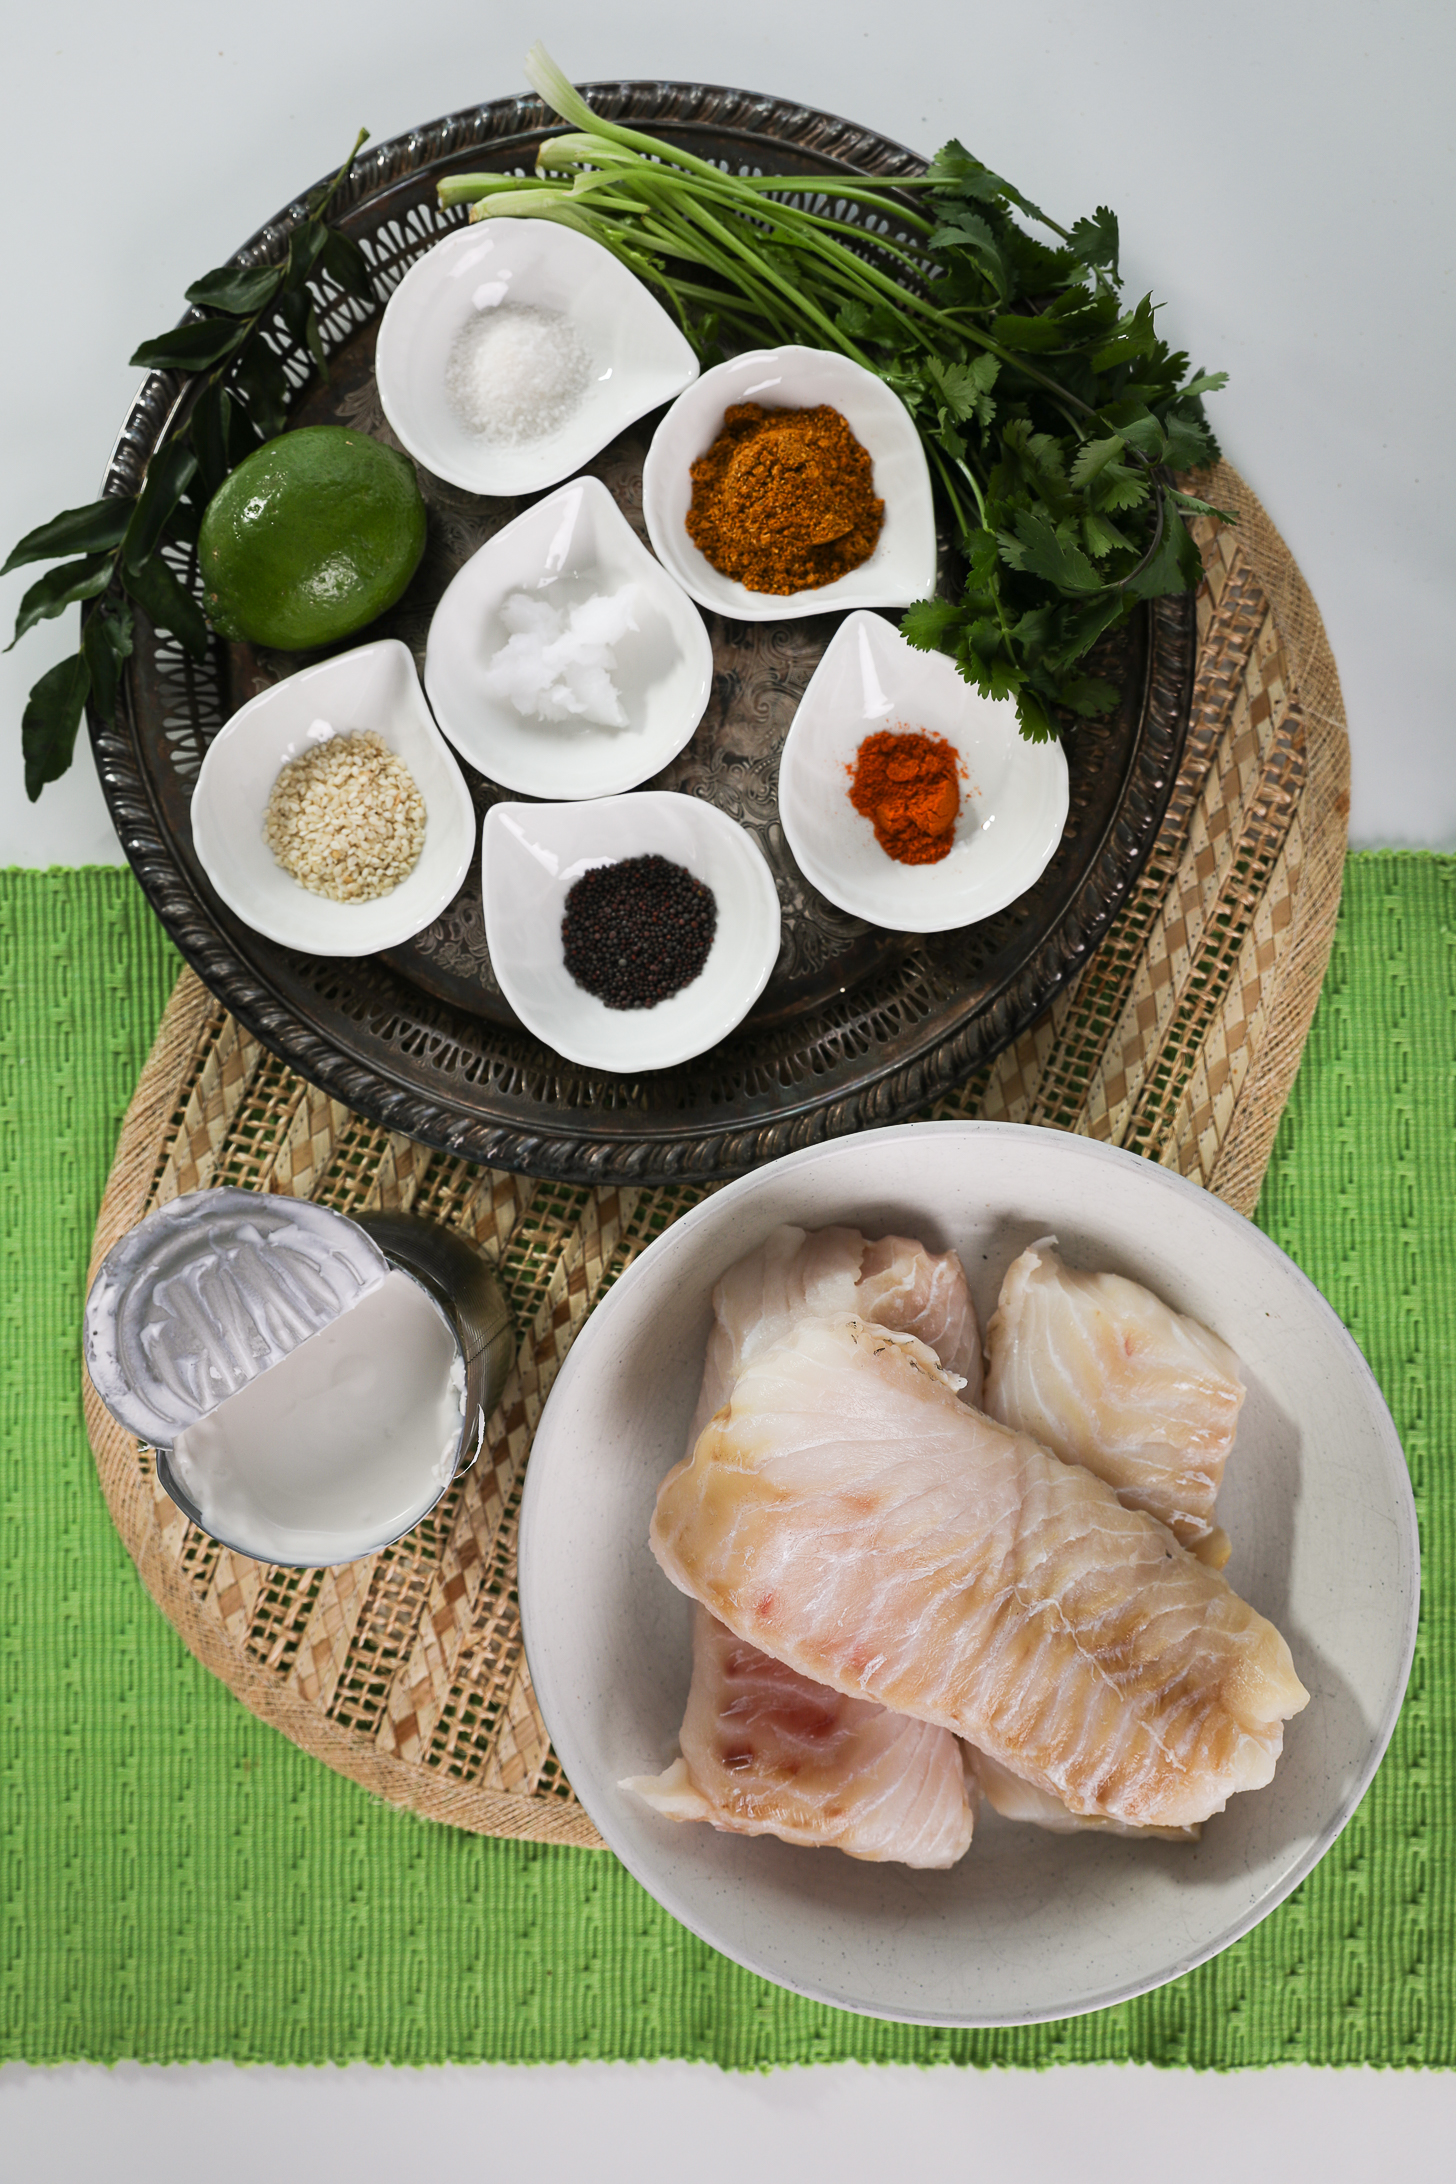 مجموعه ای از مواد غذایی شامل فیله ماهی، رامکین ادویه جات و گیاهان و همچنین یک قوطی باز شیر نارگیل است.